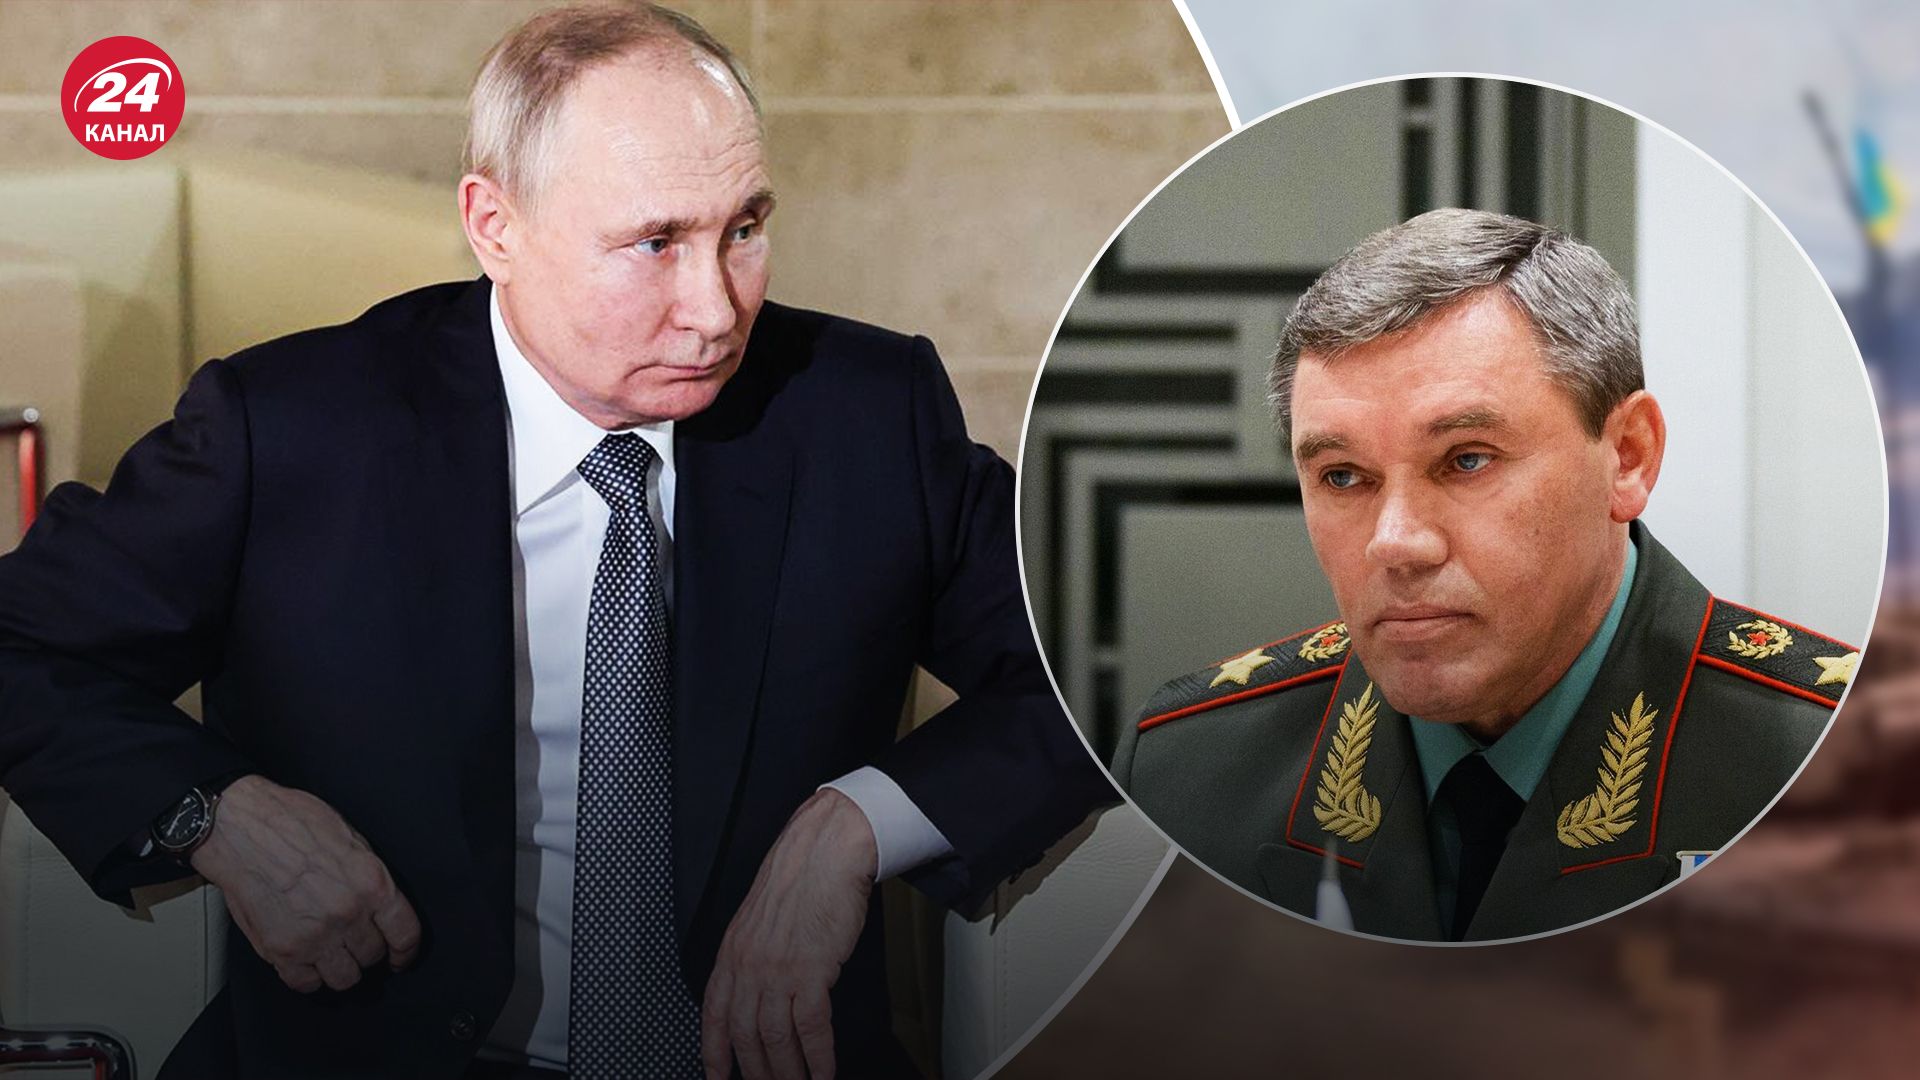 Герасимов совсем не контролирует военных командиров: в ISW предположили, почему Путин его не устранит - 24 Канал